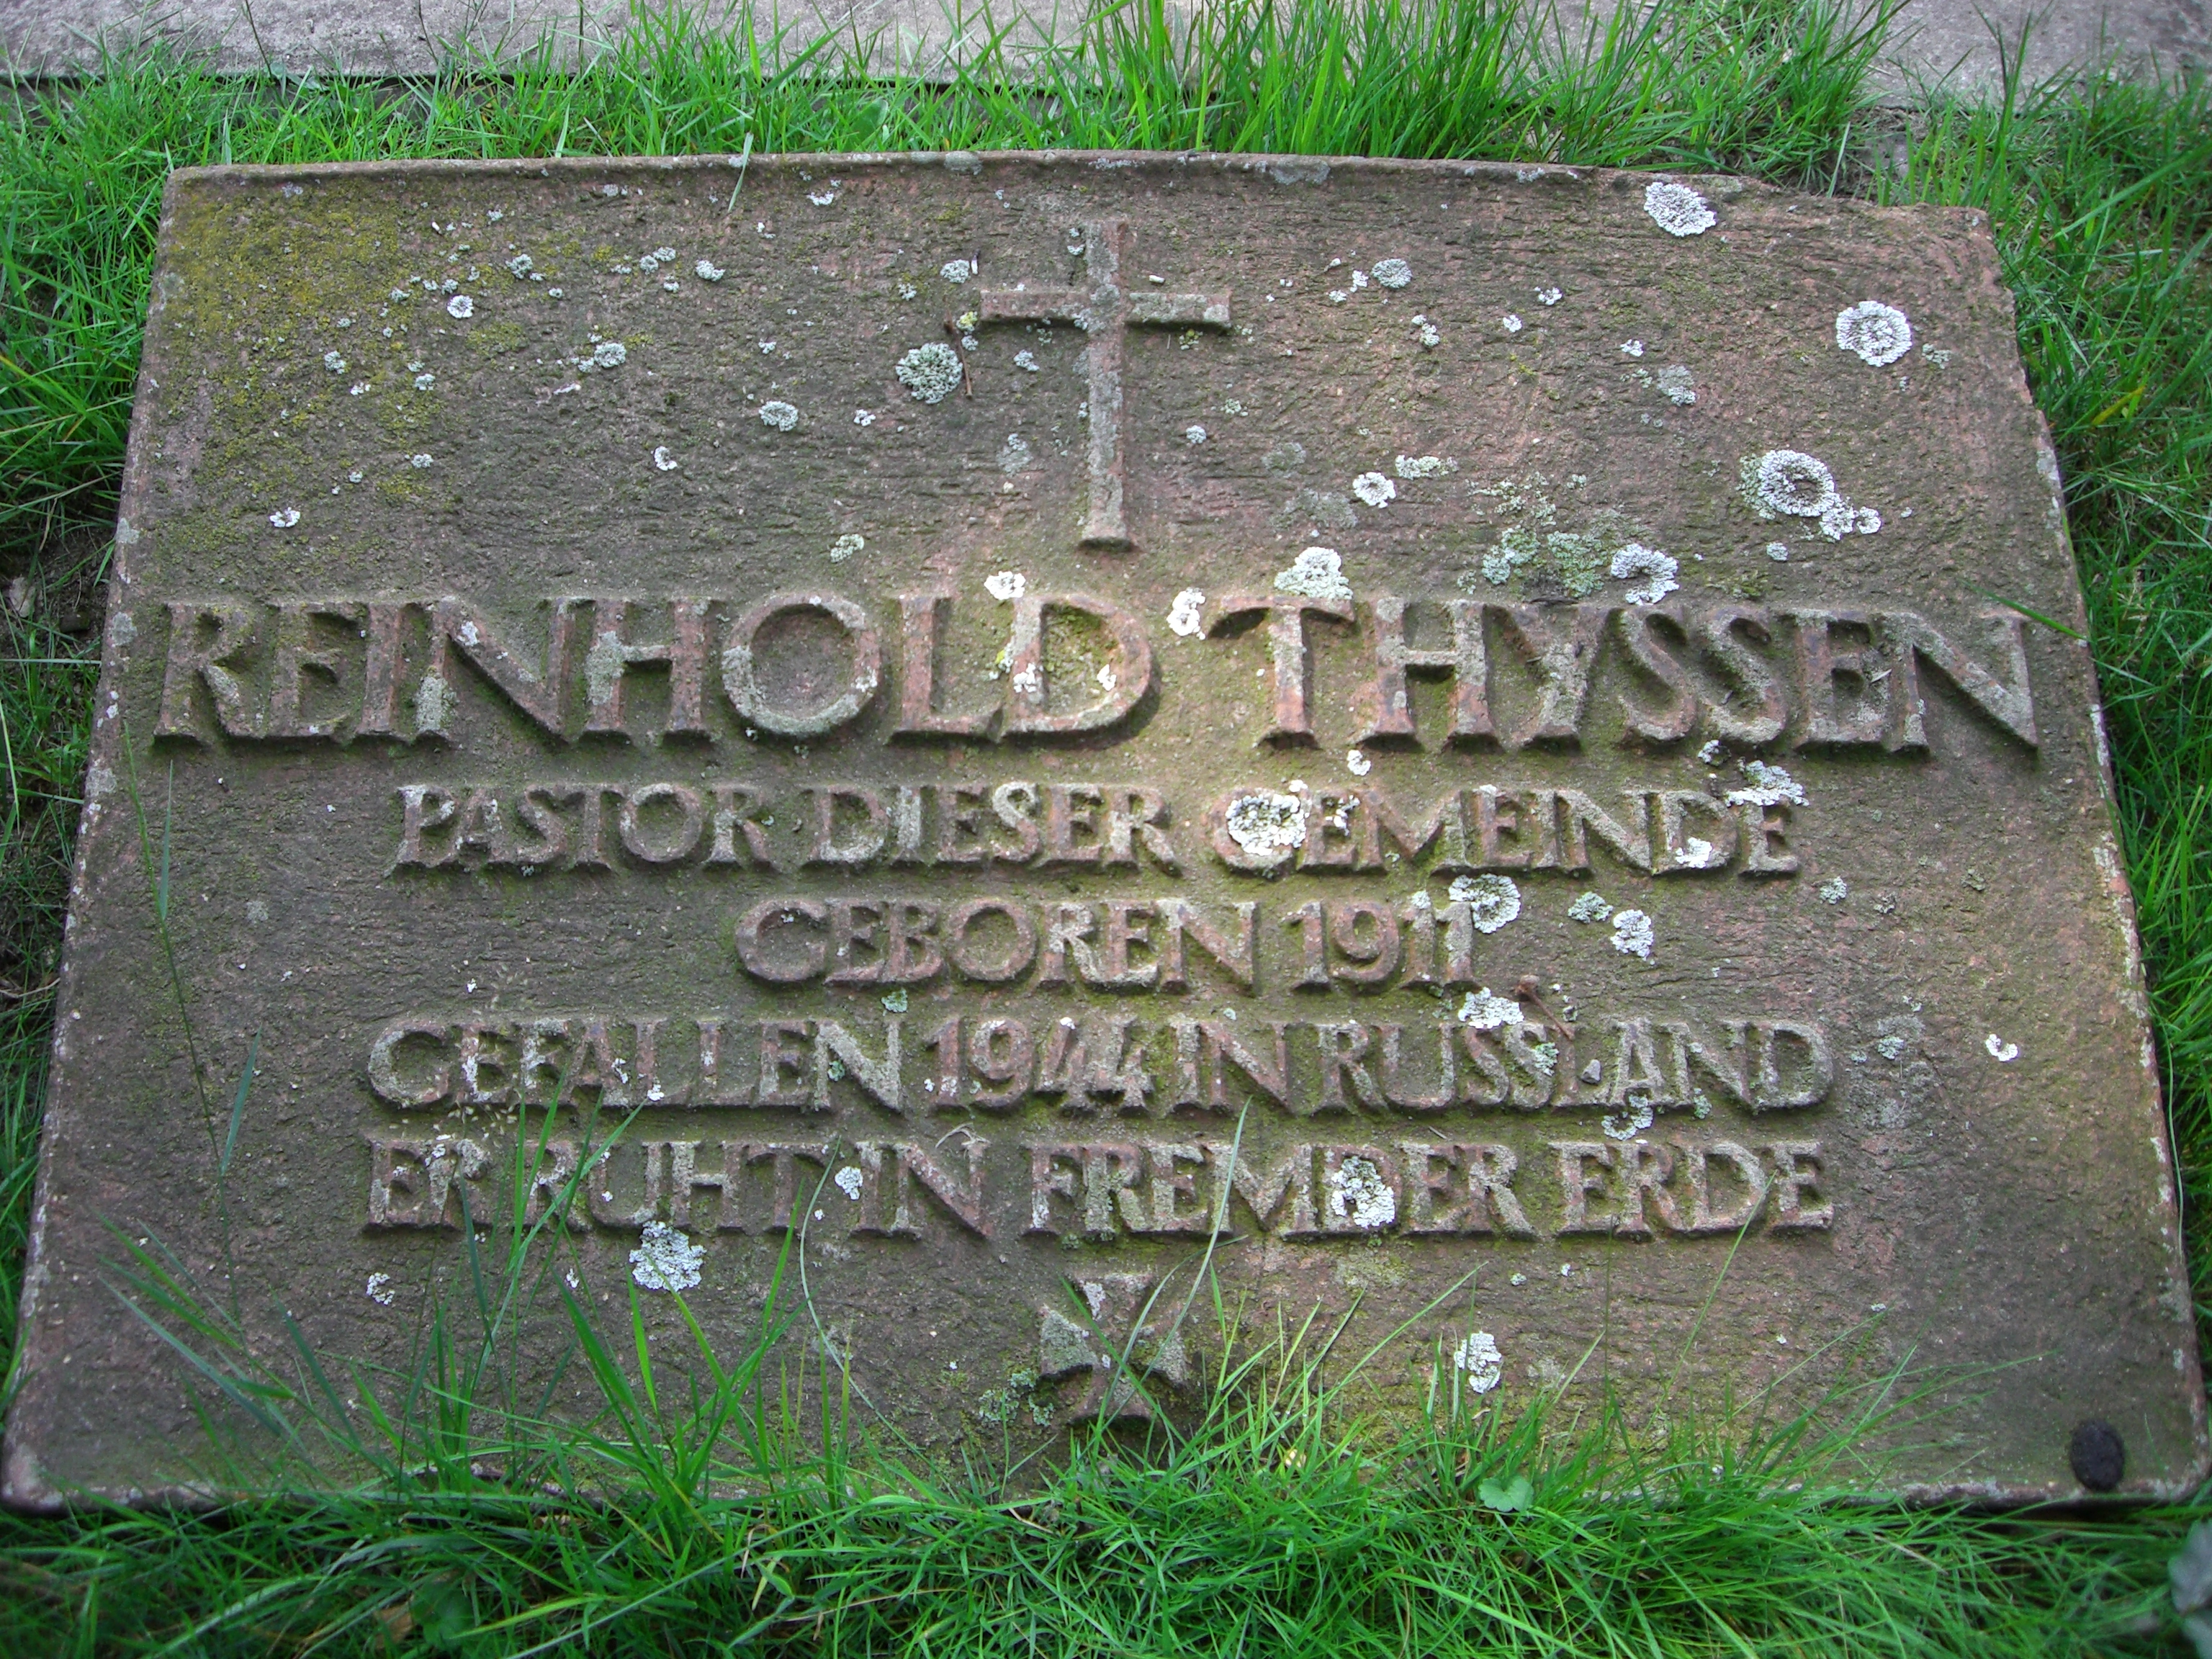 Dieses Bild zeigt die Gedenktafel für Pastor Reinhold Thyssen